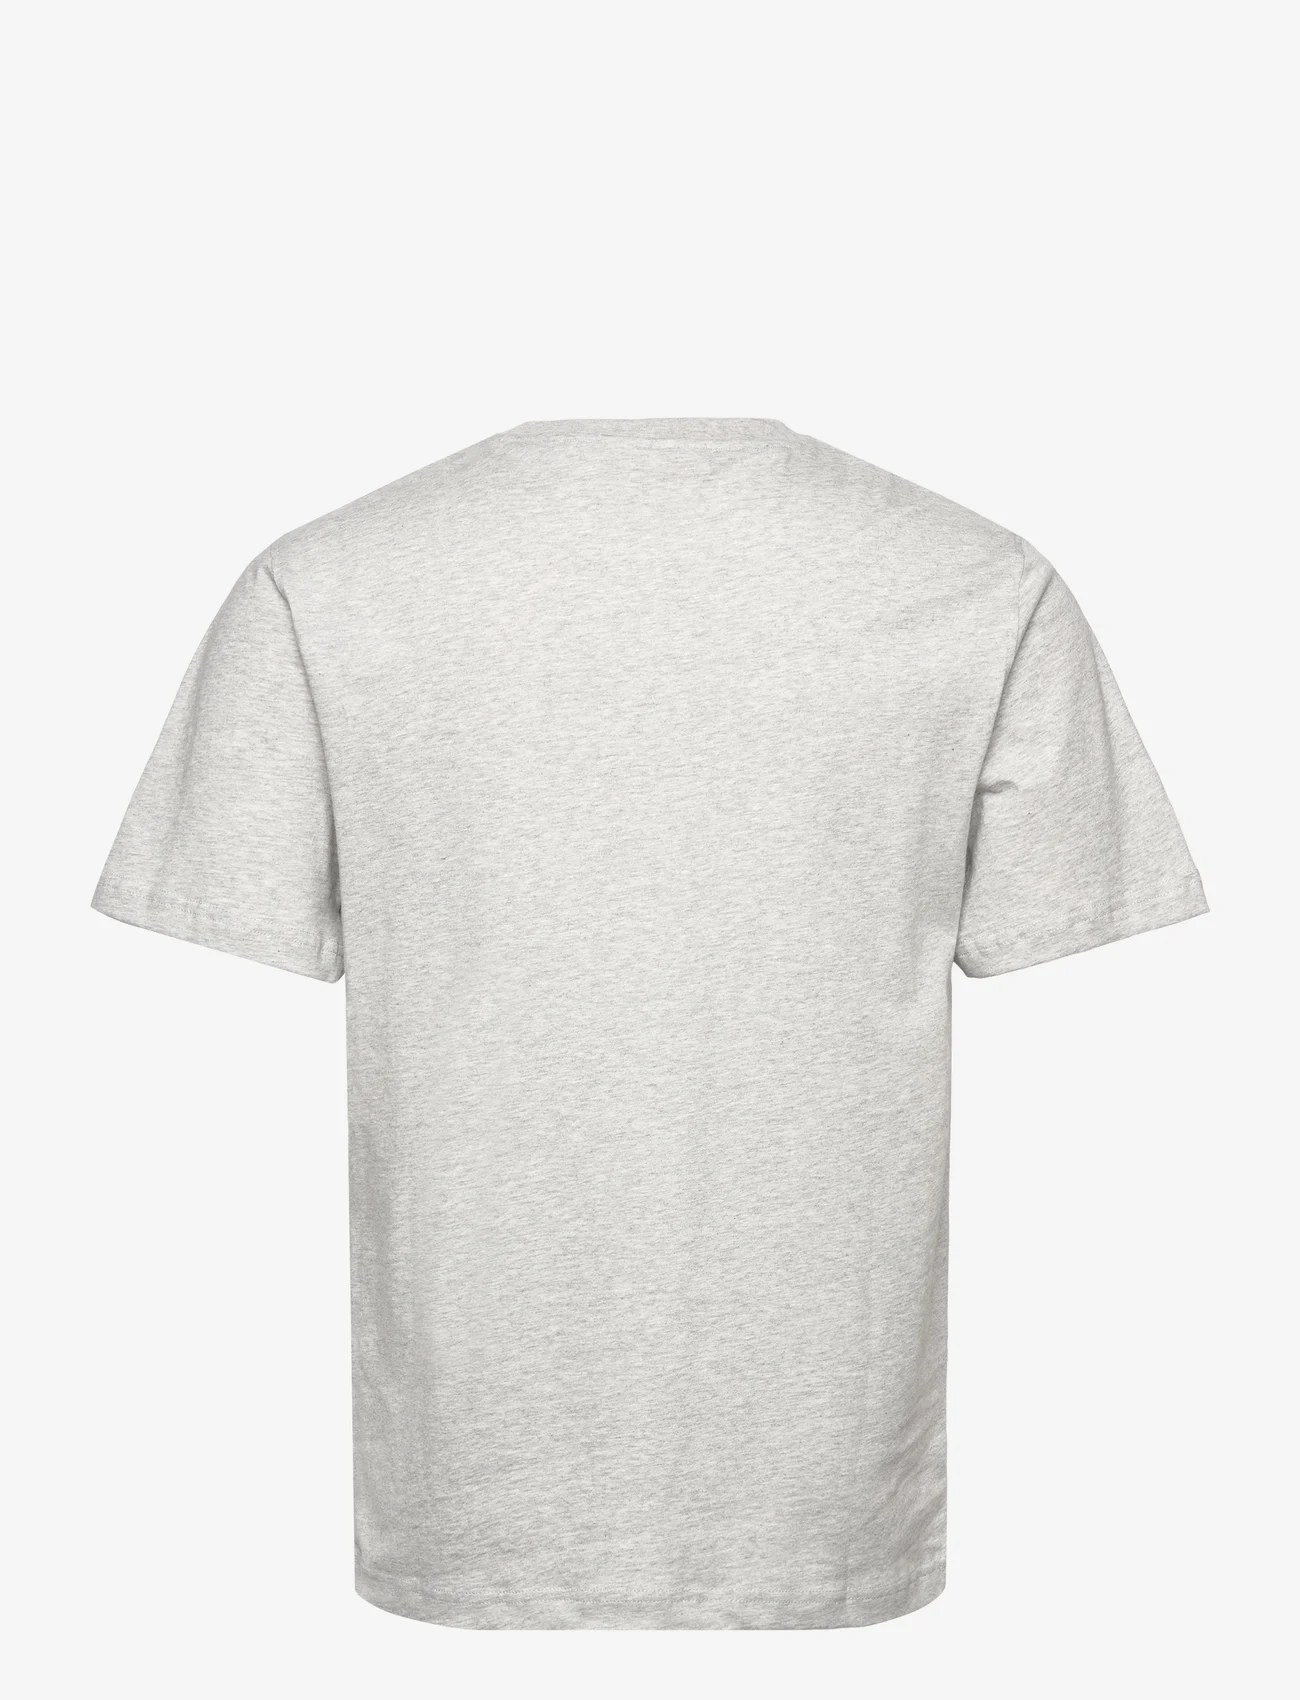 HAN Kjøbenhavn - Regular T-shirt Short sleeve - nordic style - grey melange - 1